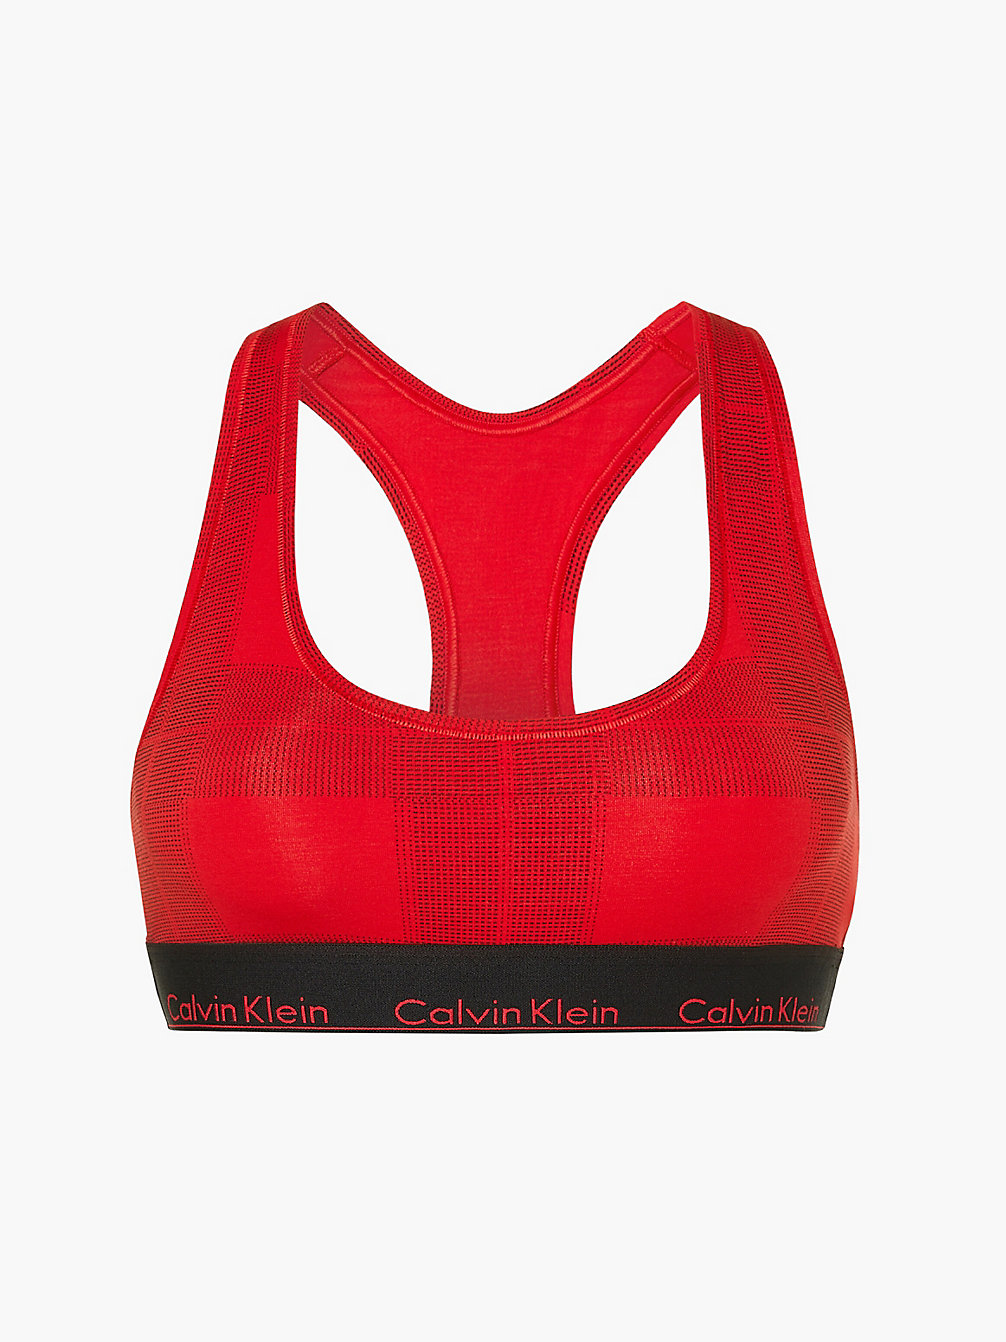 TEXTURED PLAID_EXACT Bralette - Modern Cotton undefined women Calvin Klein